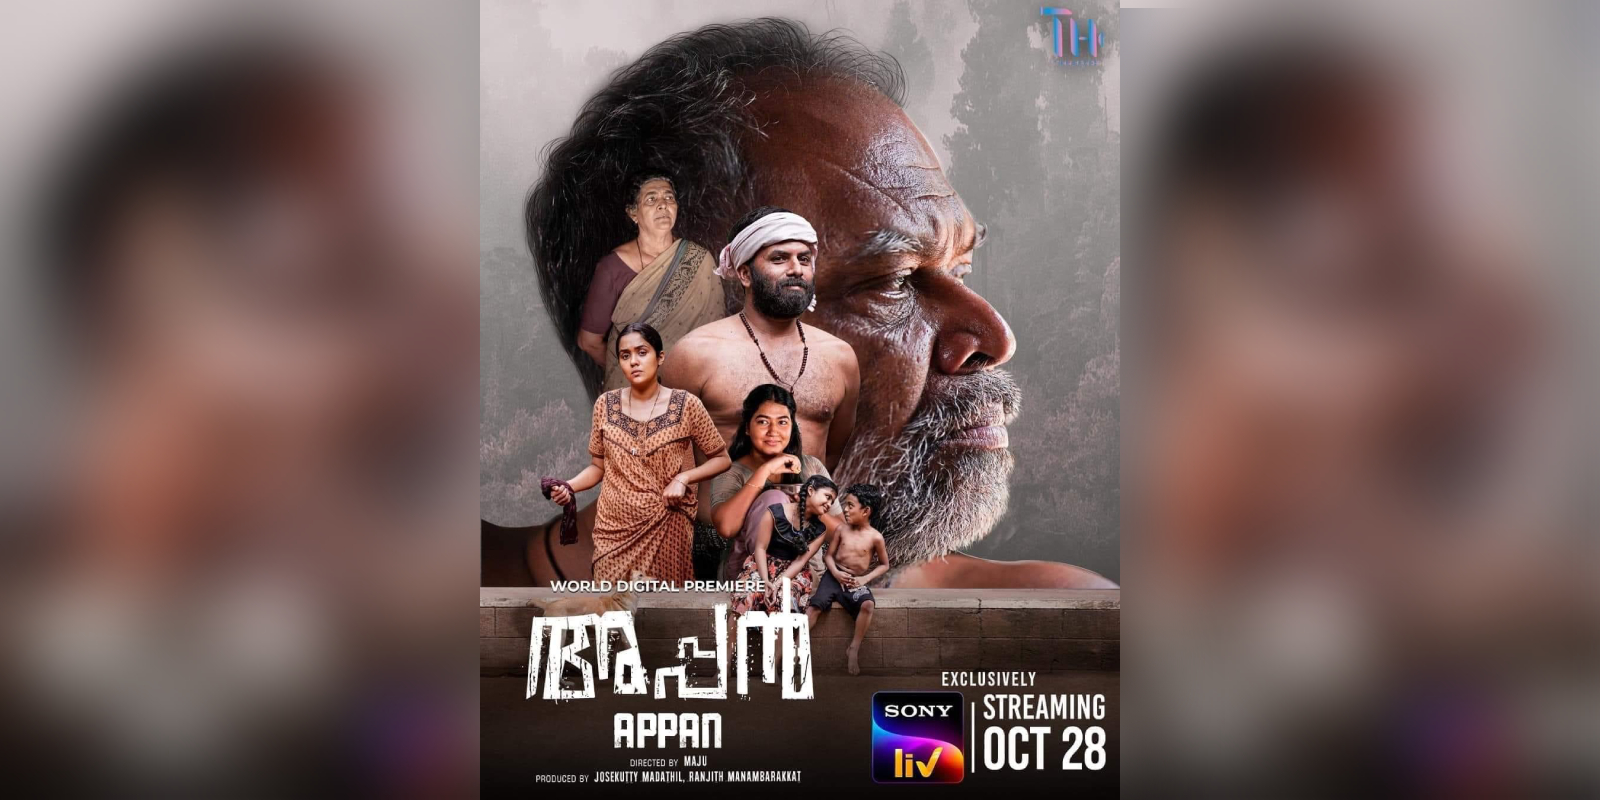 appan movie review malayalam